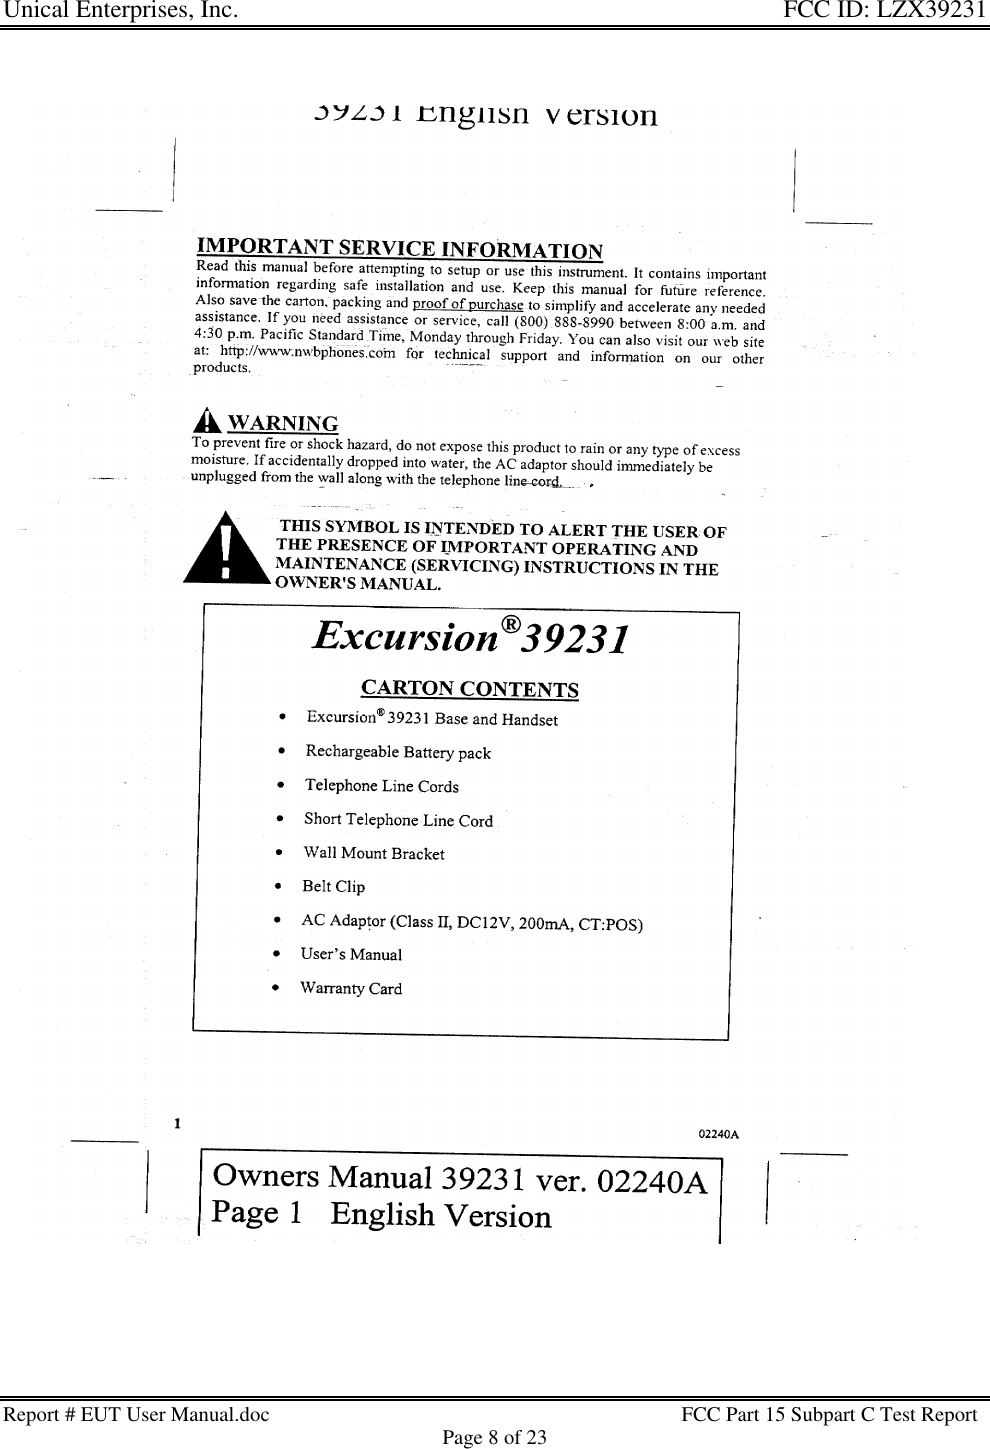 Unical Enterprises, Inc. FCC ID: LZX39231Report # EUT User Manual.doc FCC Part 15 Subpart C Test ReportPage 8 of 23